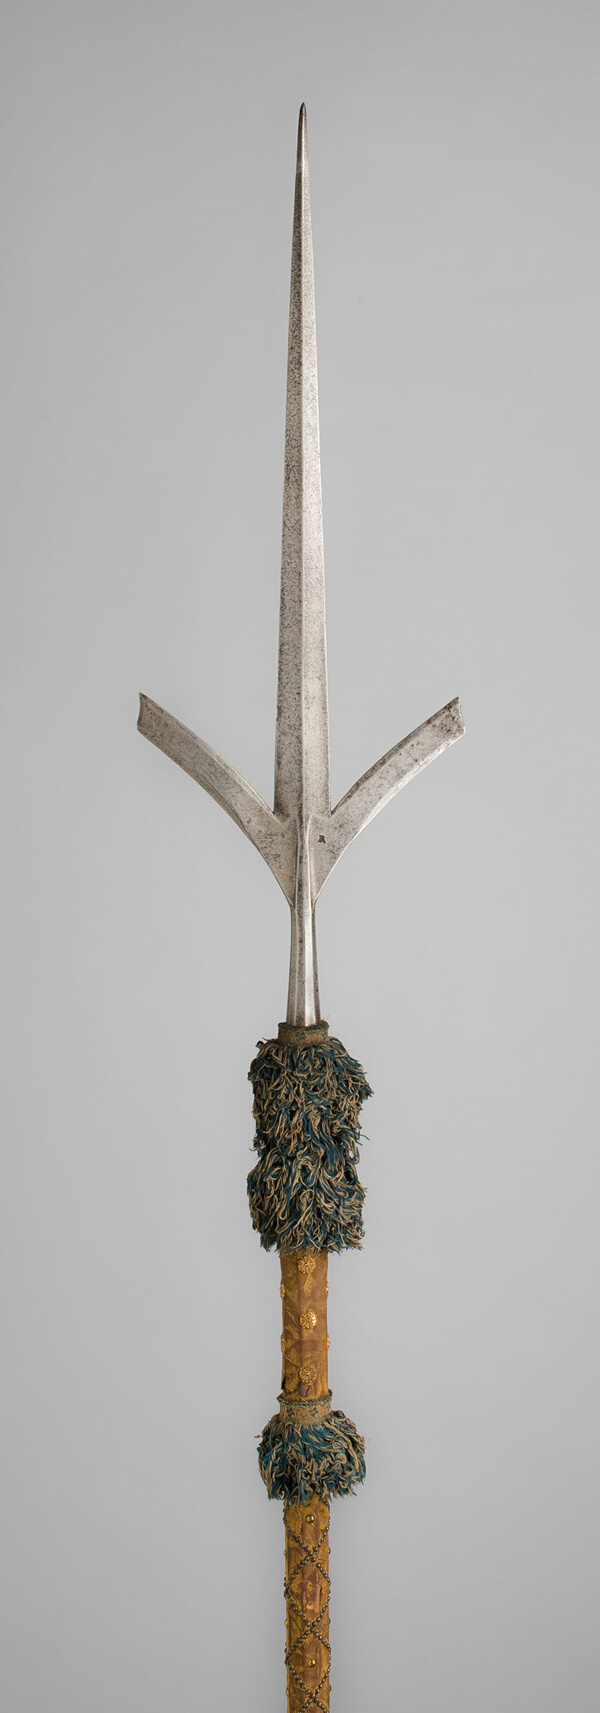 Friuli Spear